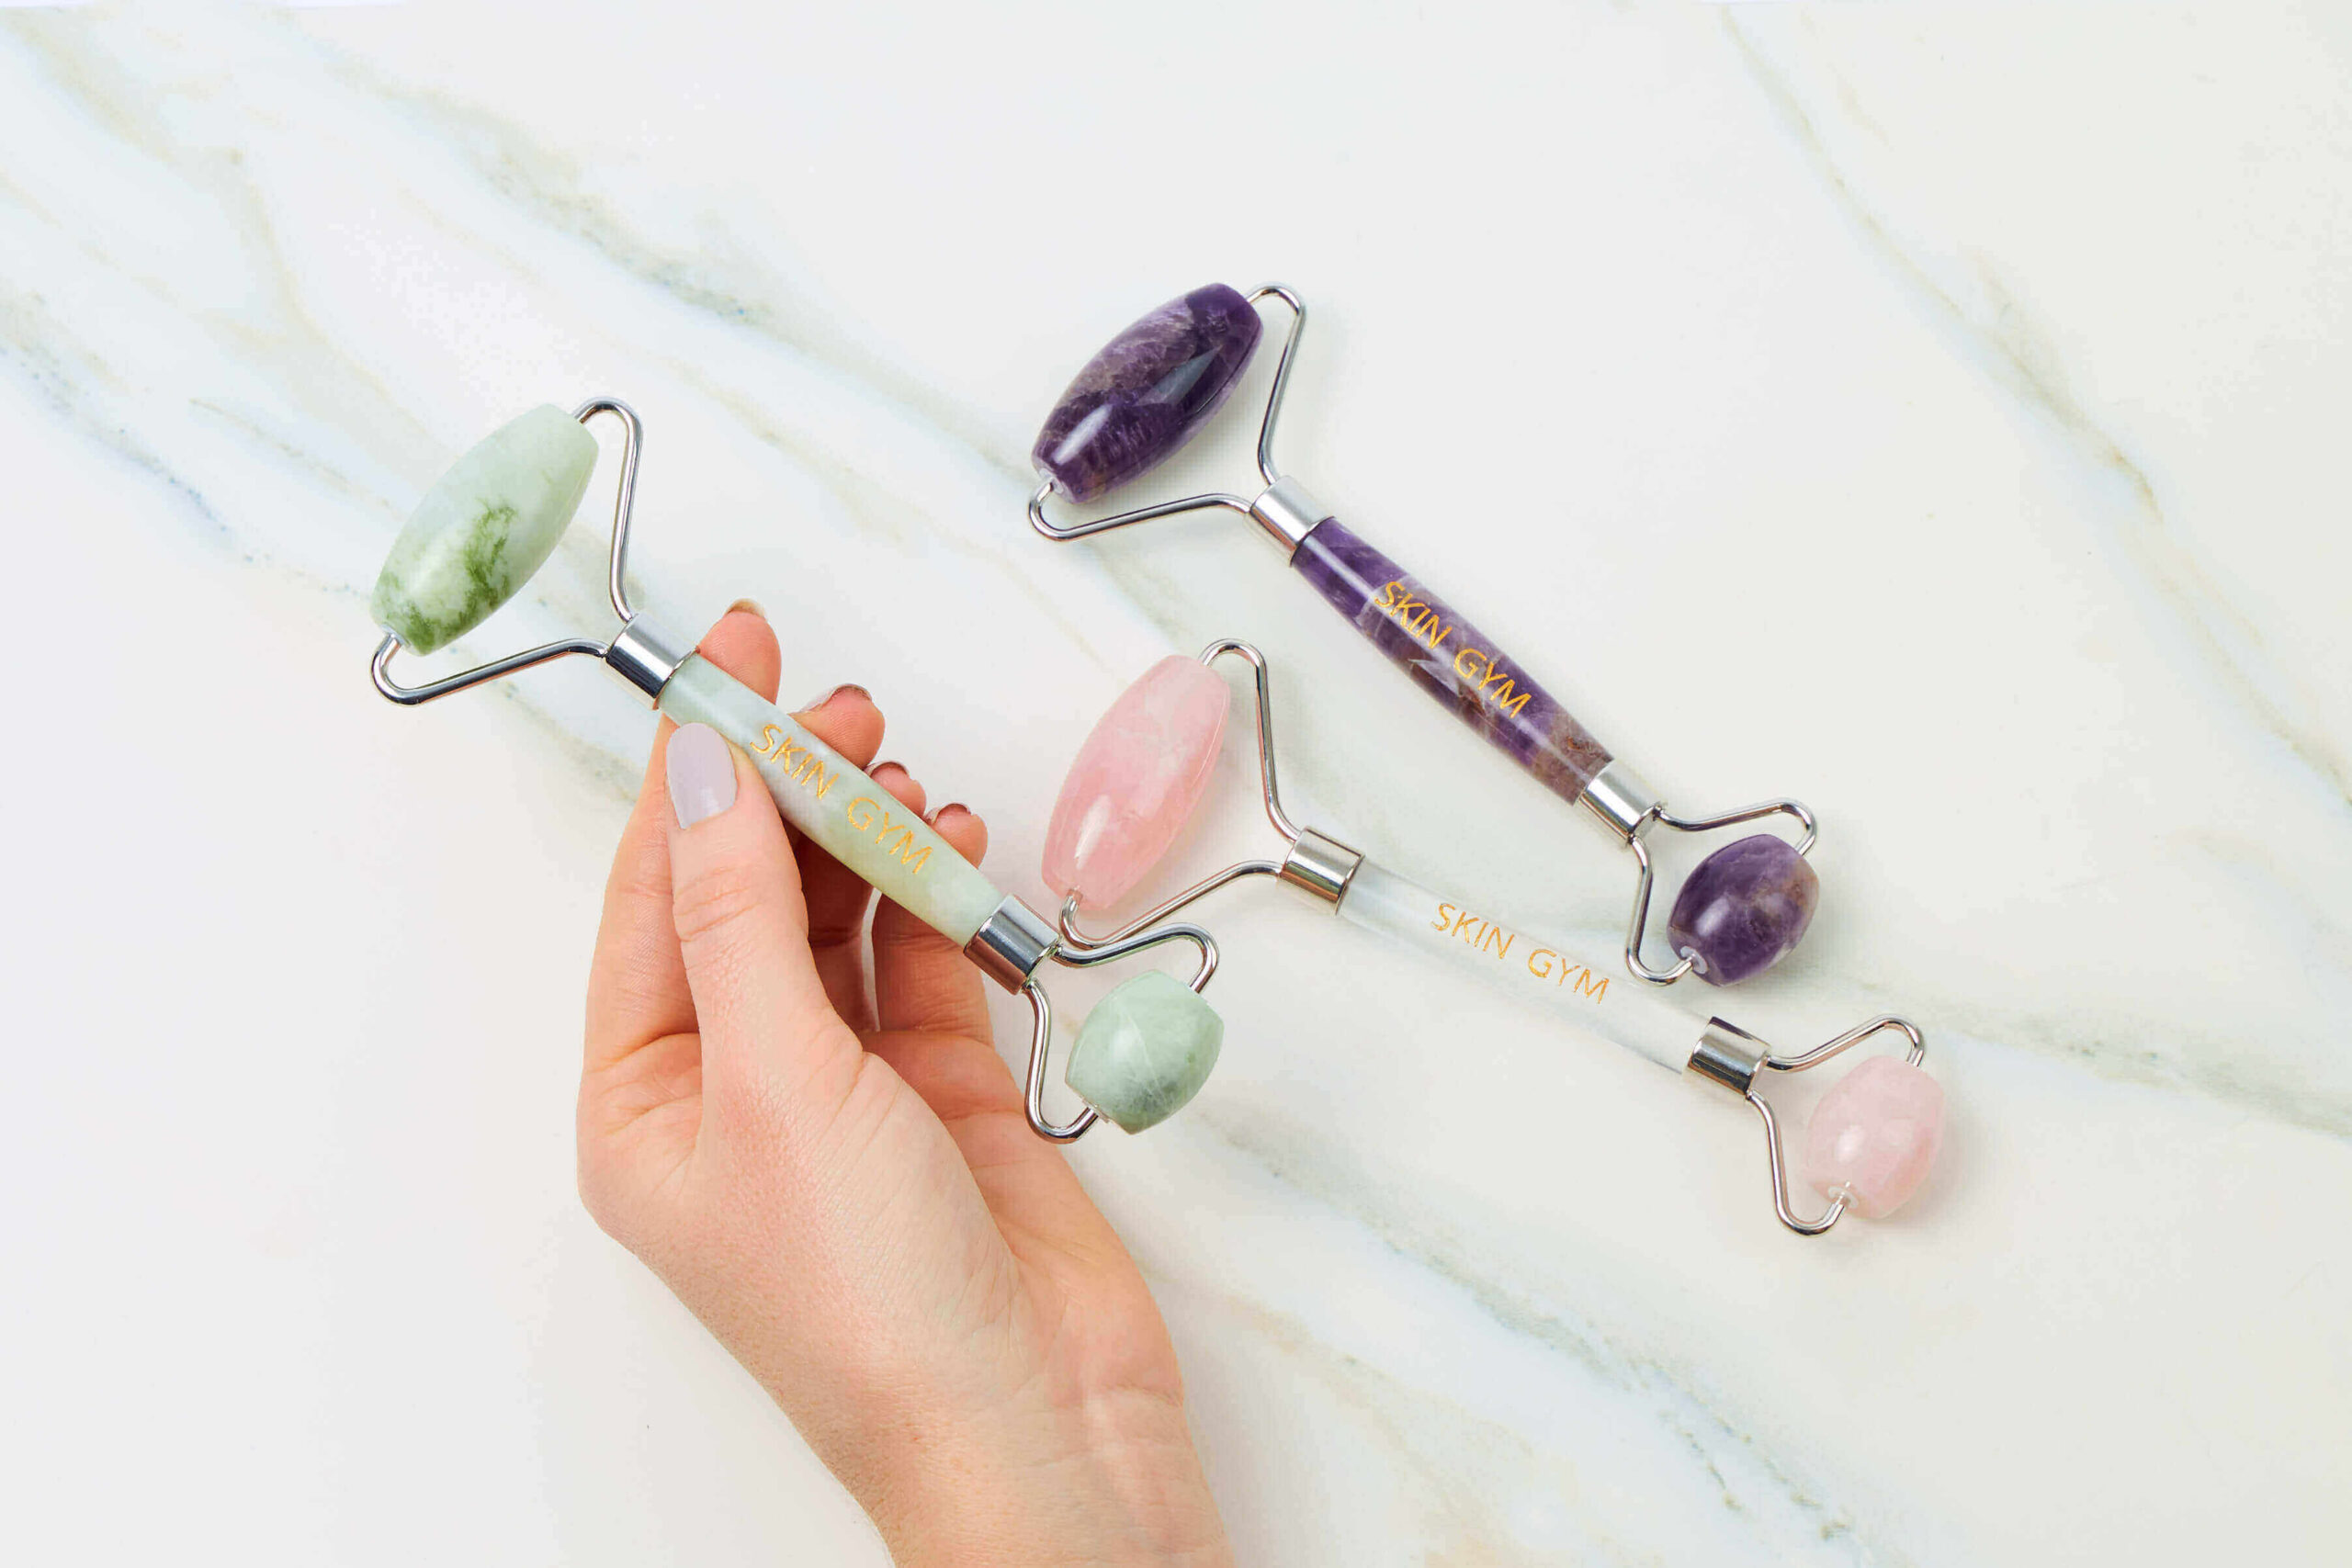 Details about   1 Facial Crystal Roller Jade or Amethyst #FR03 You Choose: Rose Quartz